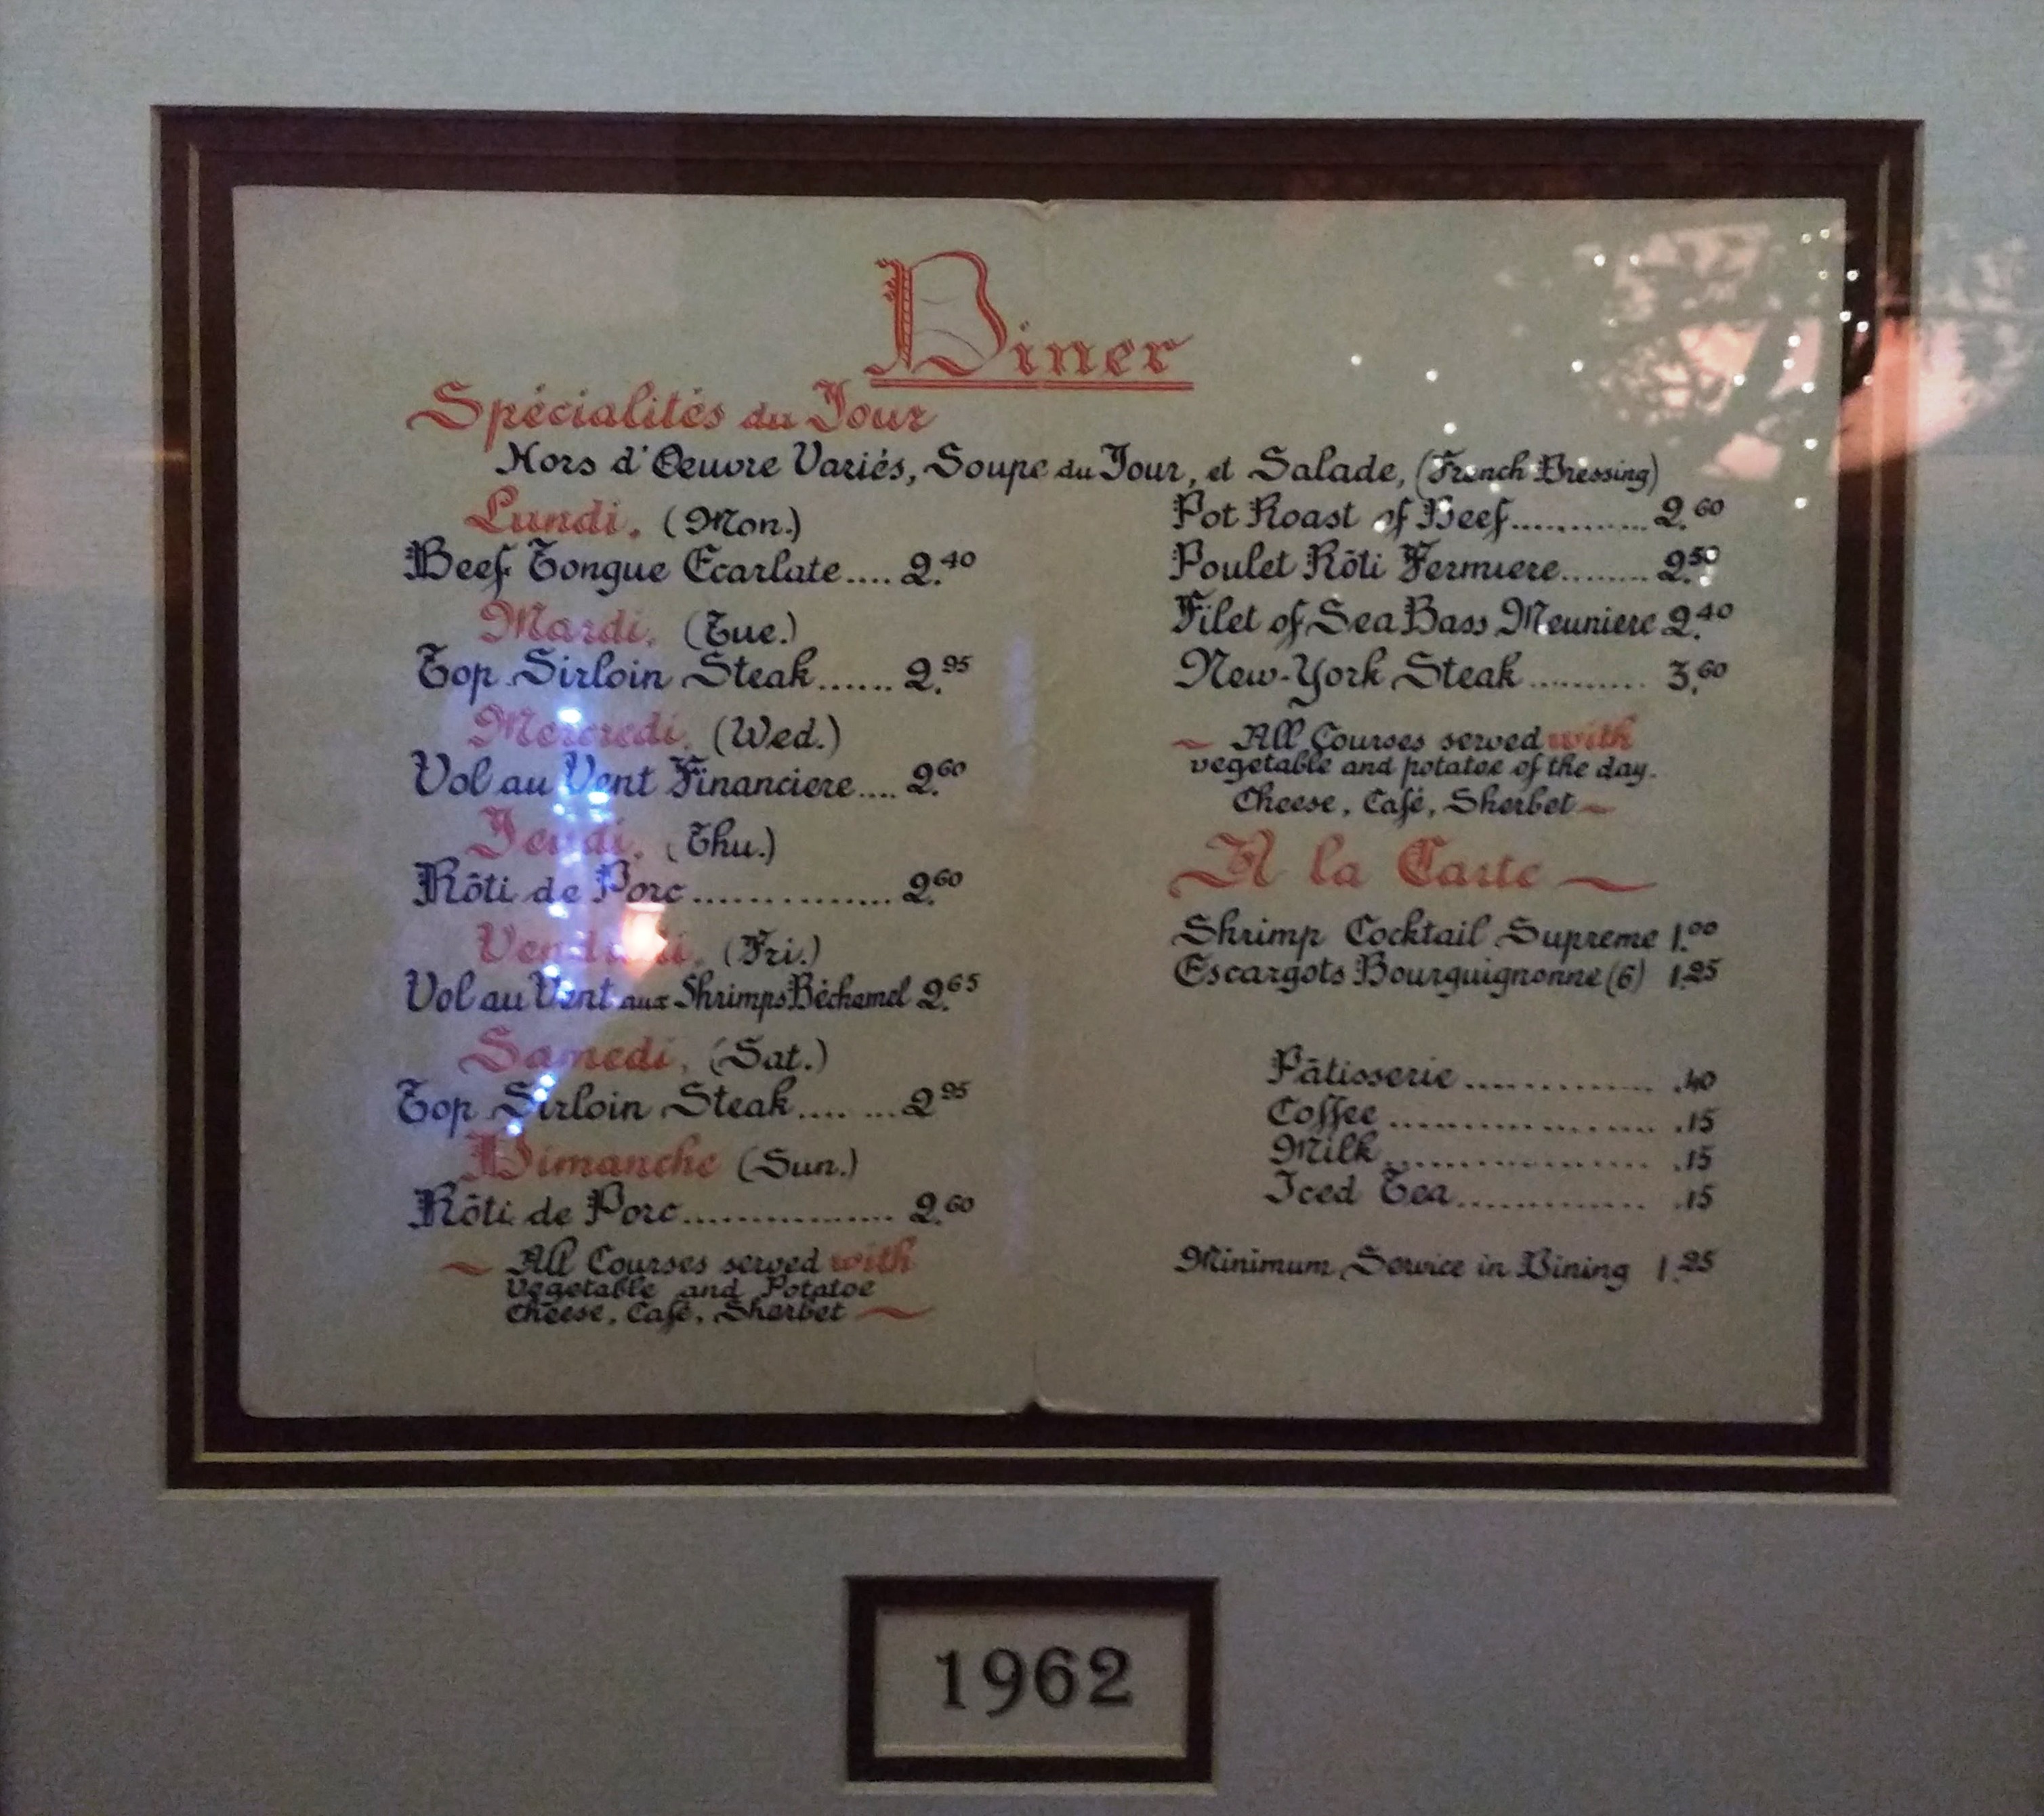 1962 menu - photo by Dean Curtis, 2016